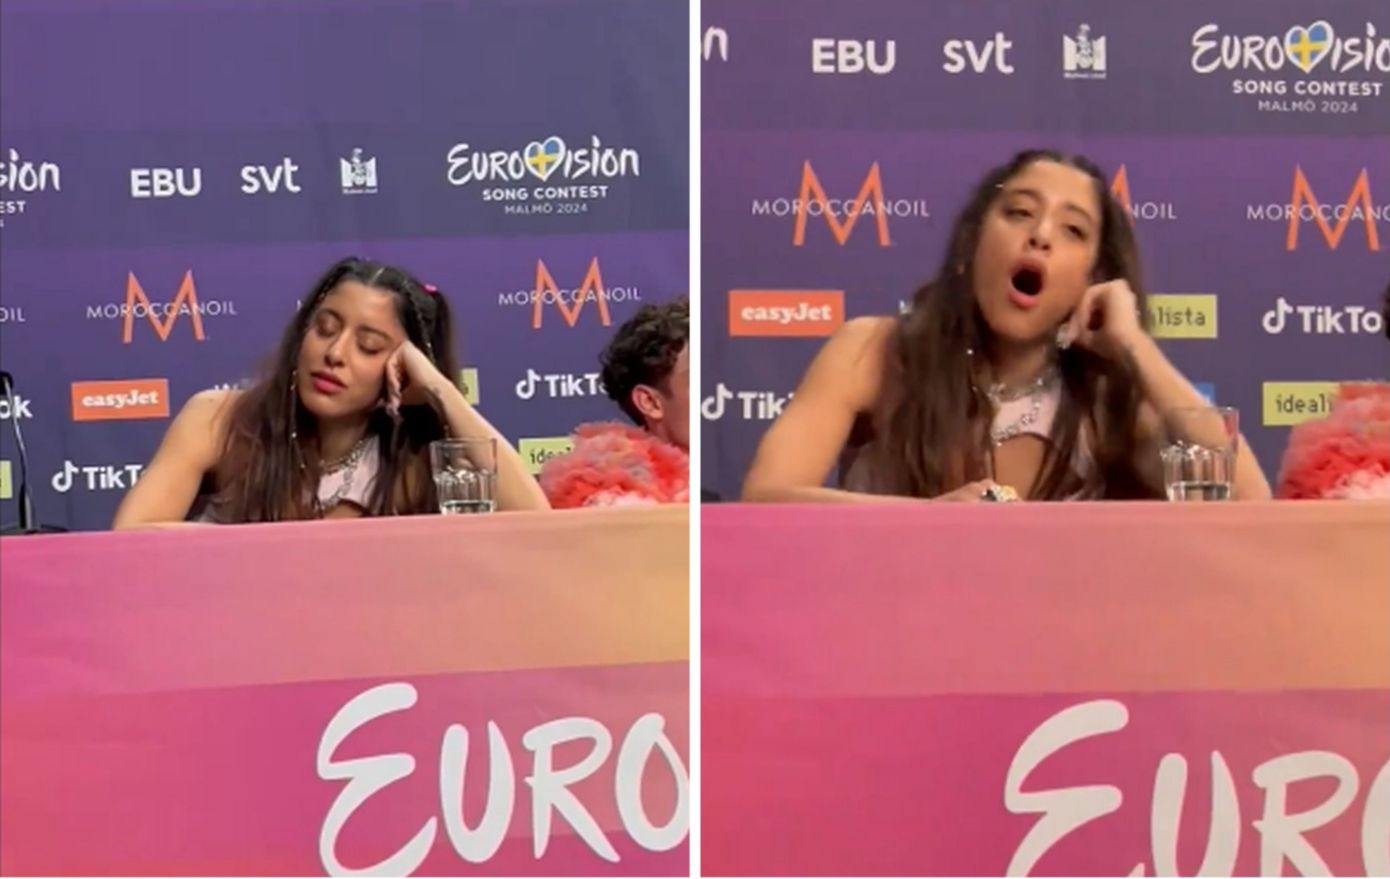 Η Μαρίνα Σάττι απαντά για τα χασμουρητά στη Eurovision, ενώ μιλούσε η τραγουδίστρια του Ισραήλ – Το βίντεο που ανέβασε η τραγουδίστρια